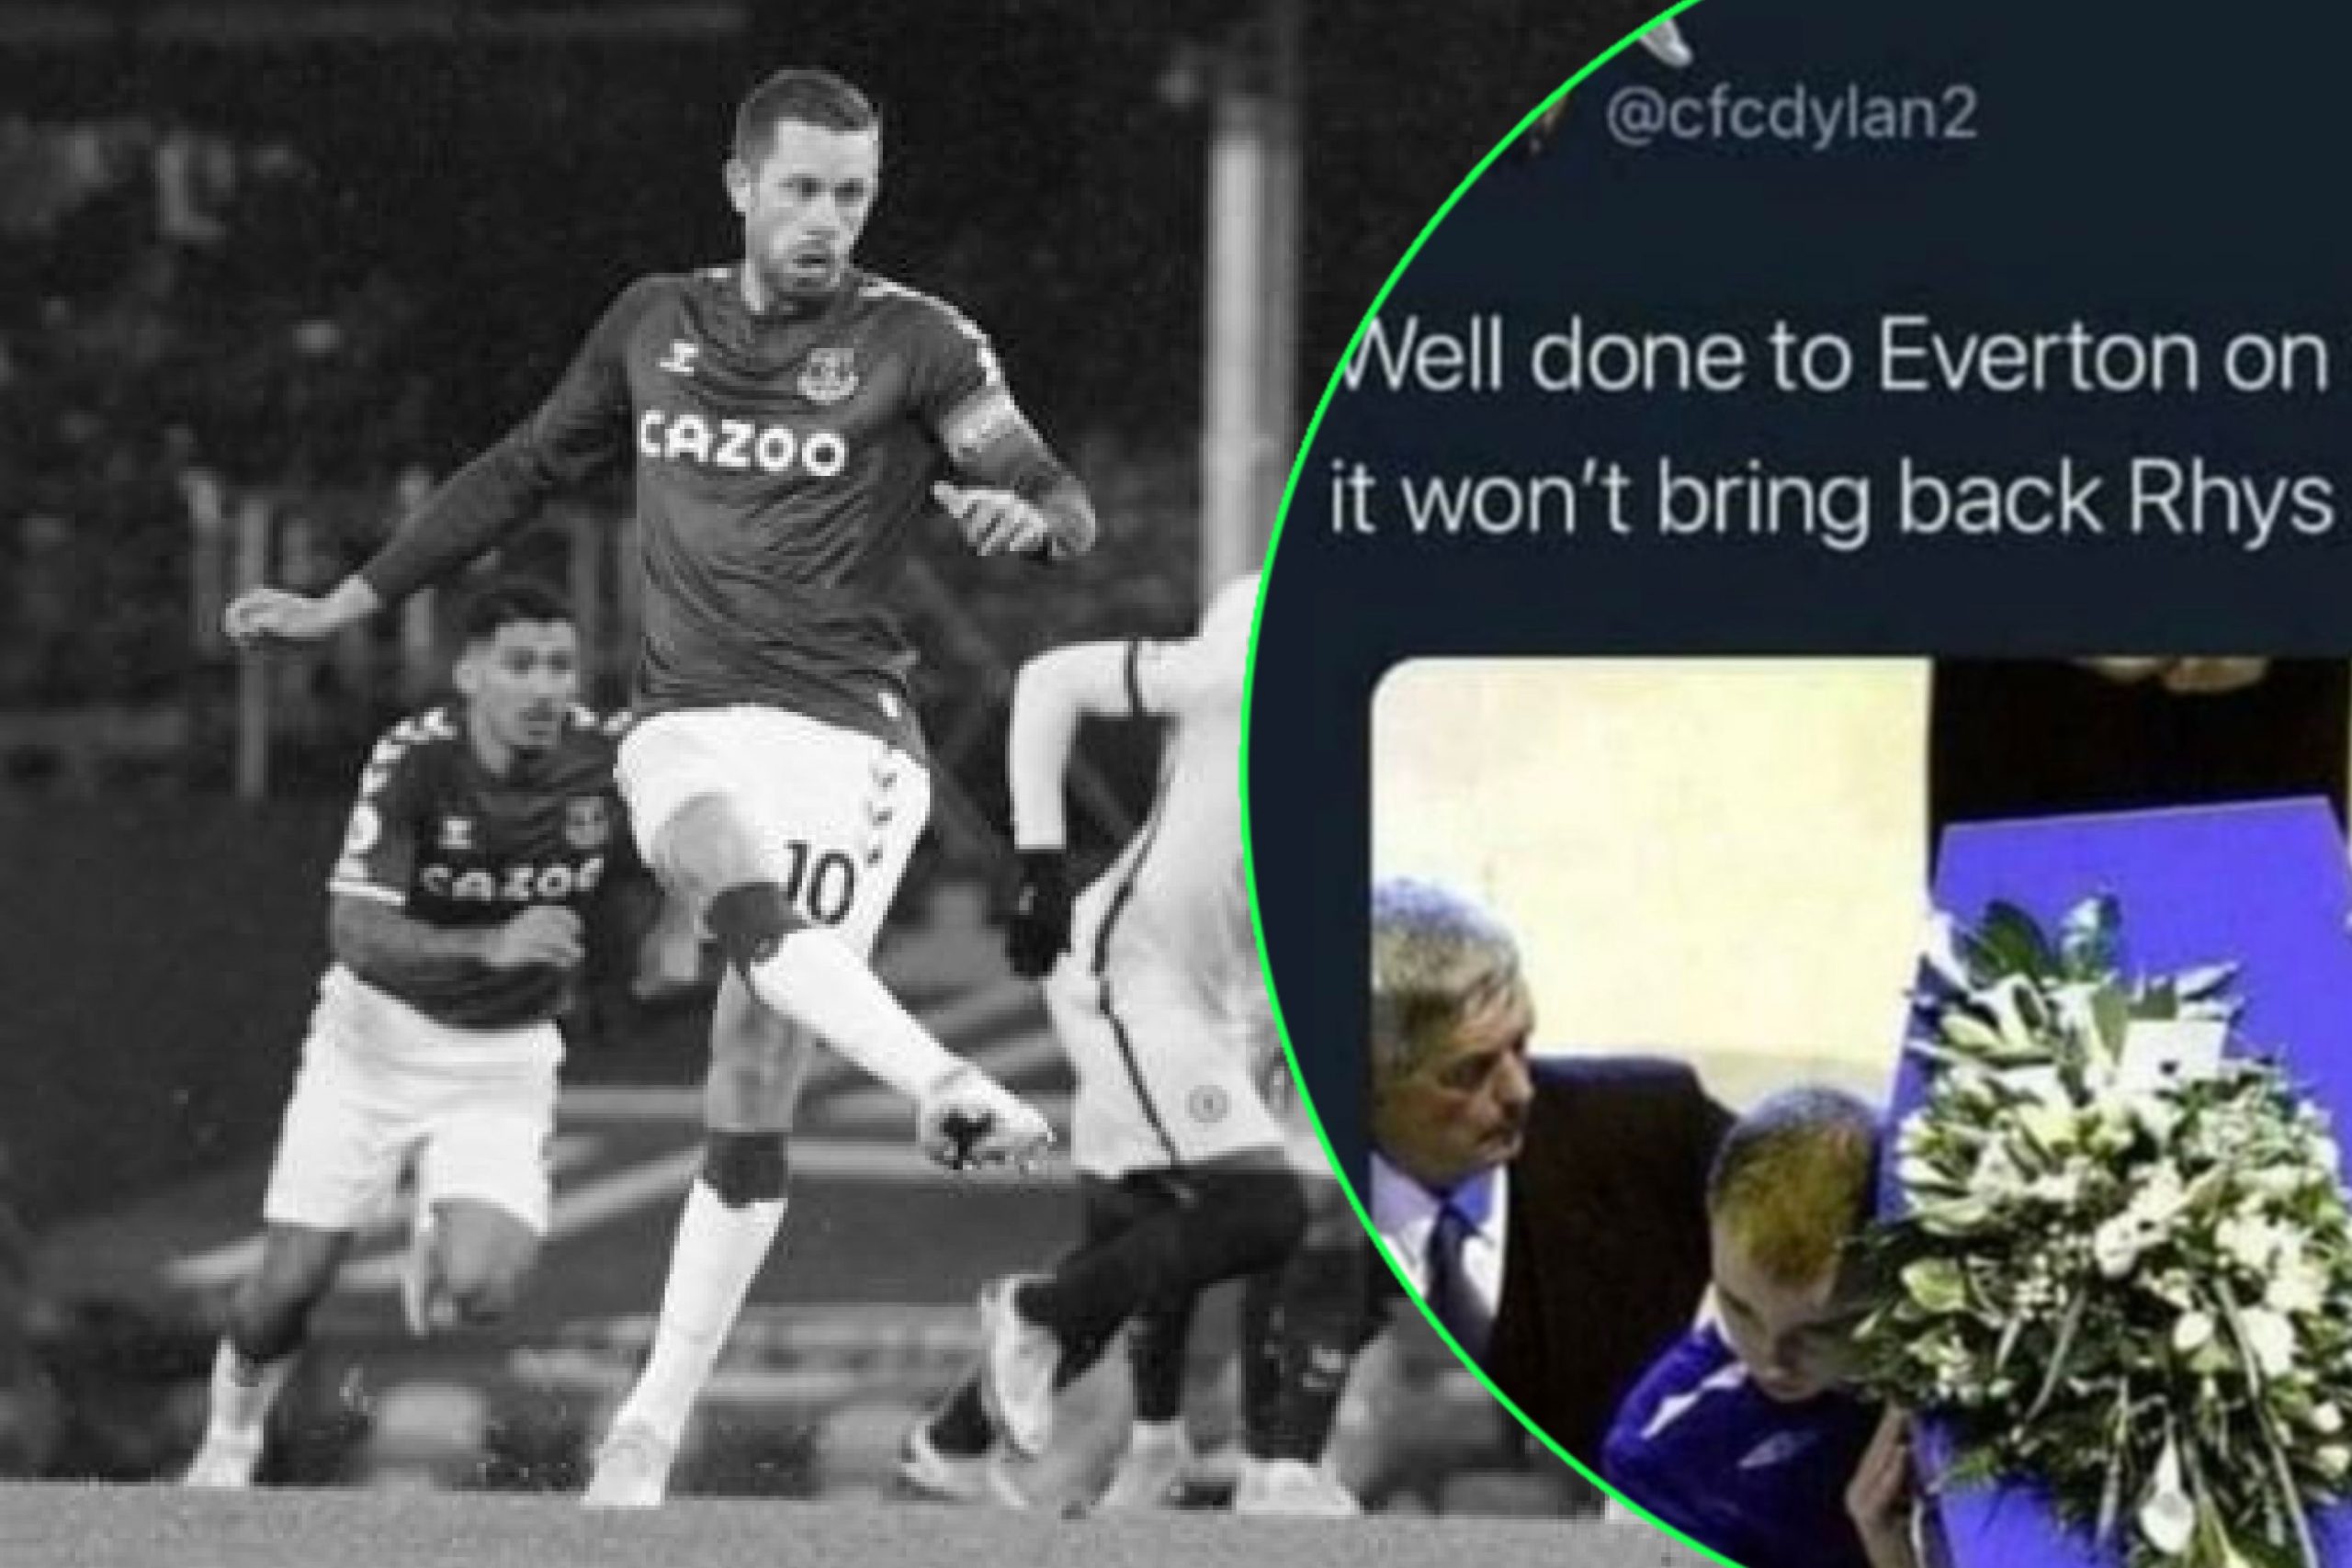 Chelsea fan takes football rivalry too far by mocking murdered Everton fan Rhys Jones after defeat